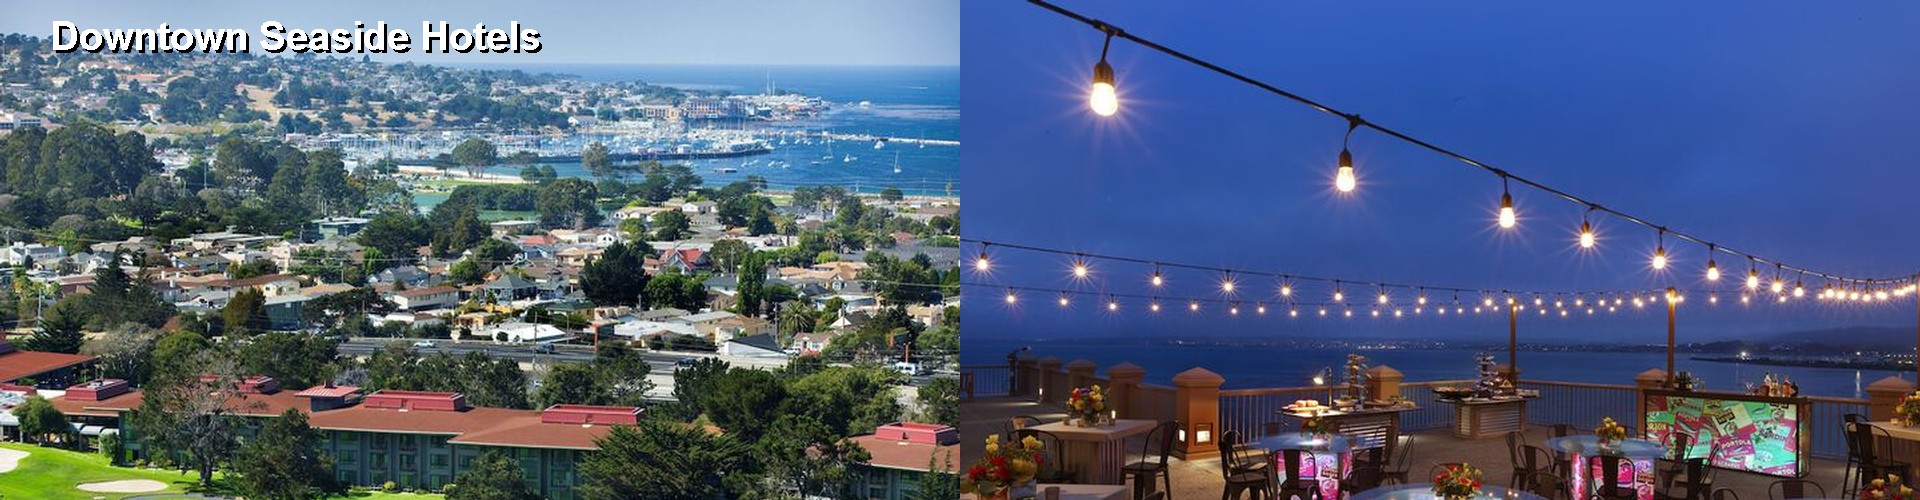 4 Best Hotels near Downtown Seaside